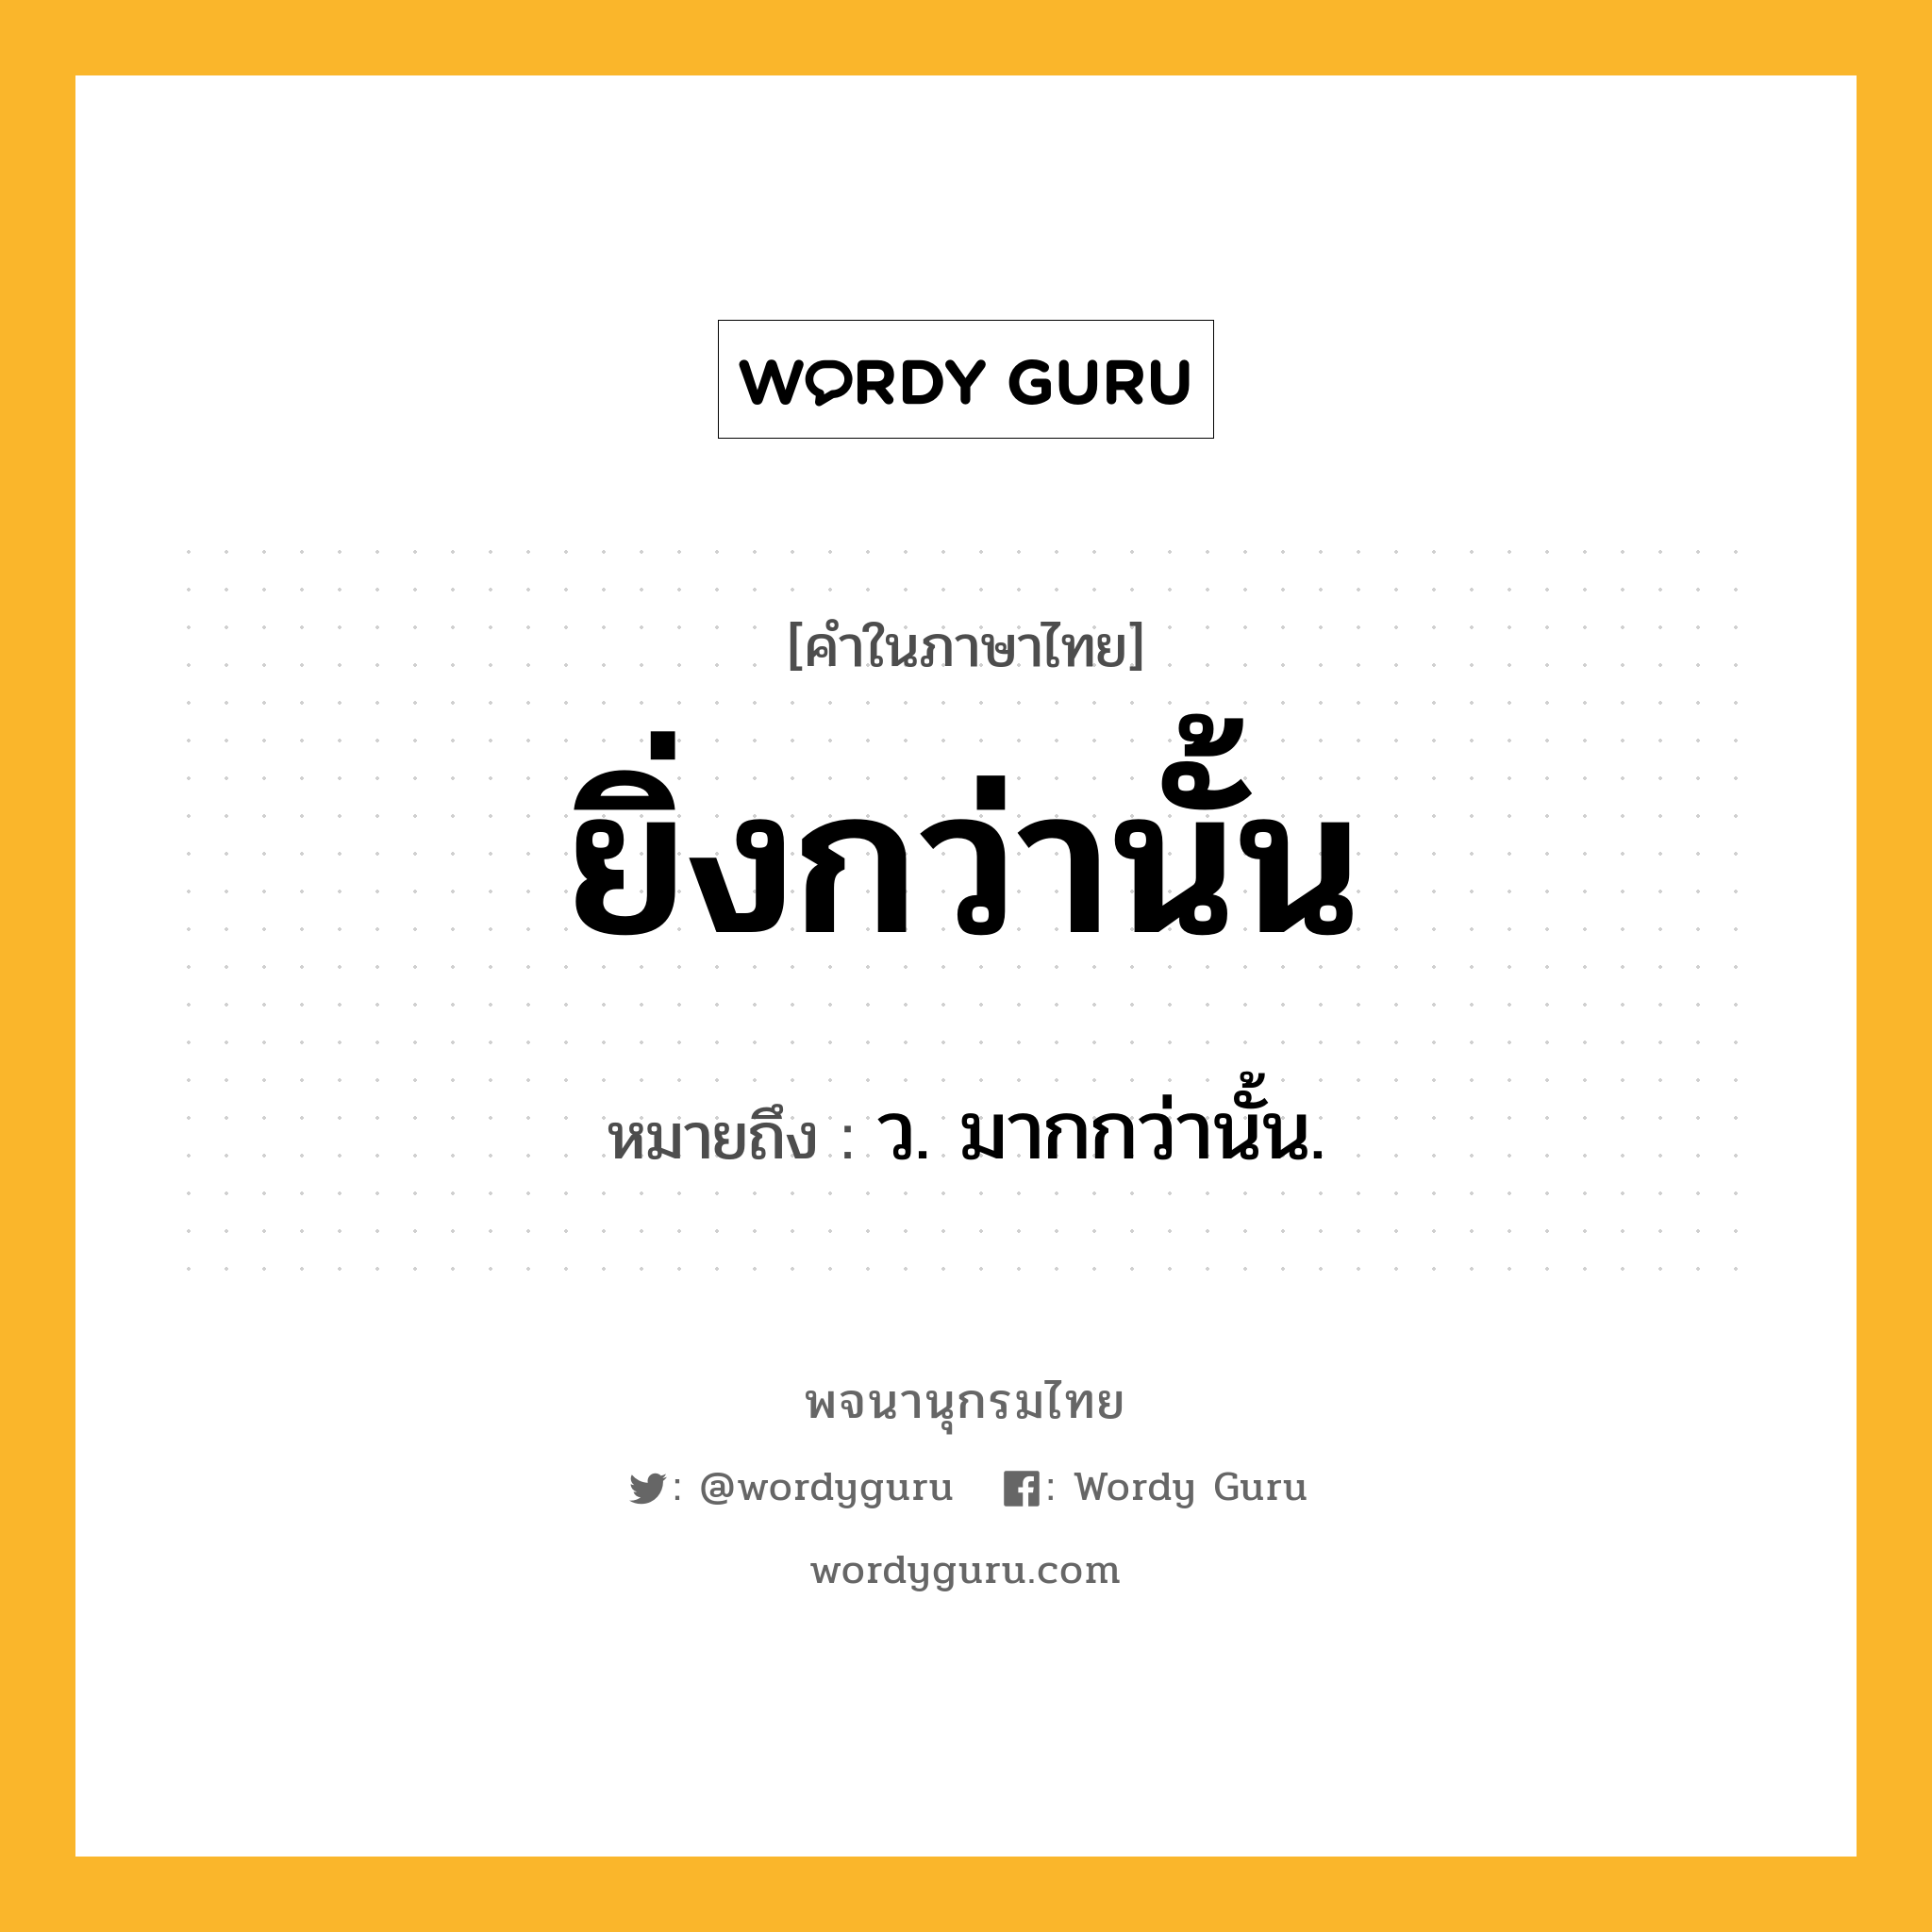 ยิ่งกว่านั้น หมายถึงอะไร?, คำในภาษาไทย ยิ่งกว่านั้น หมายถึง ว. มากกว่านั้น.